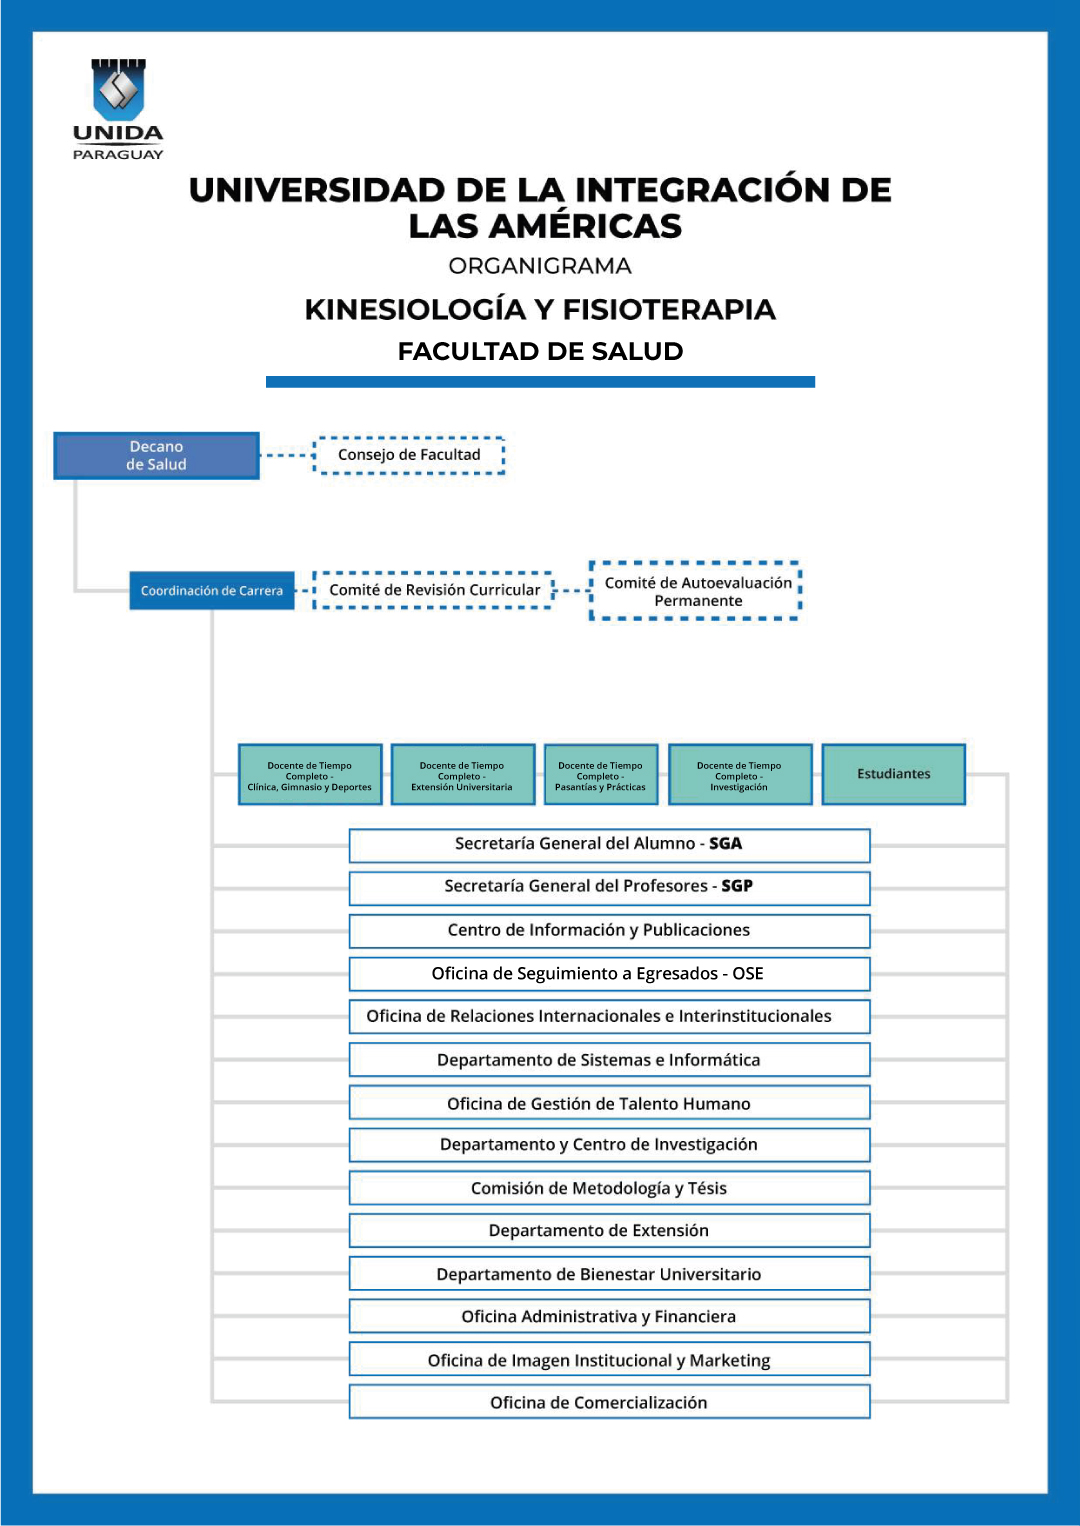 Kinesiología & Fisioterapia - UNIDA